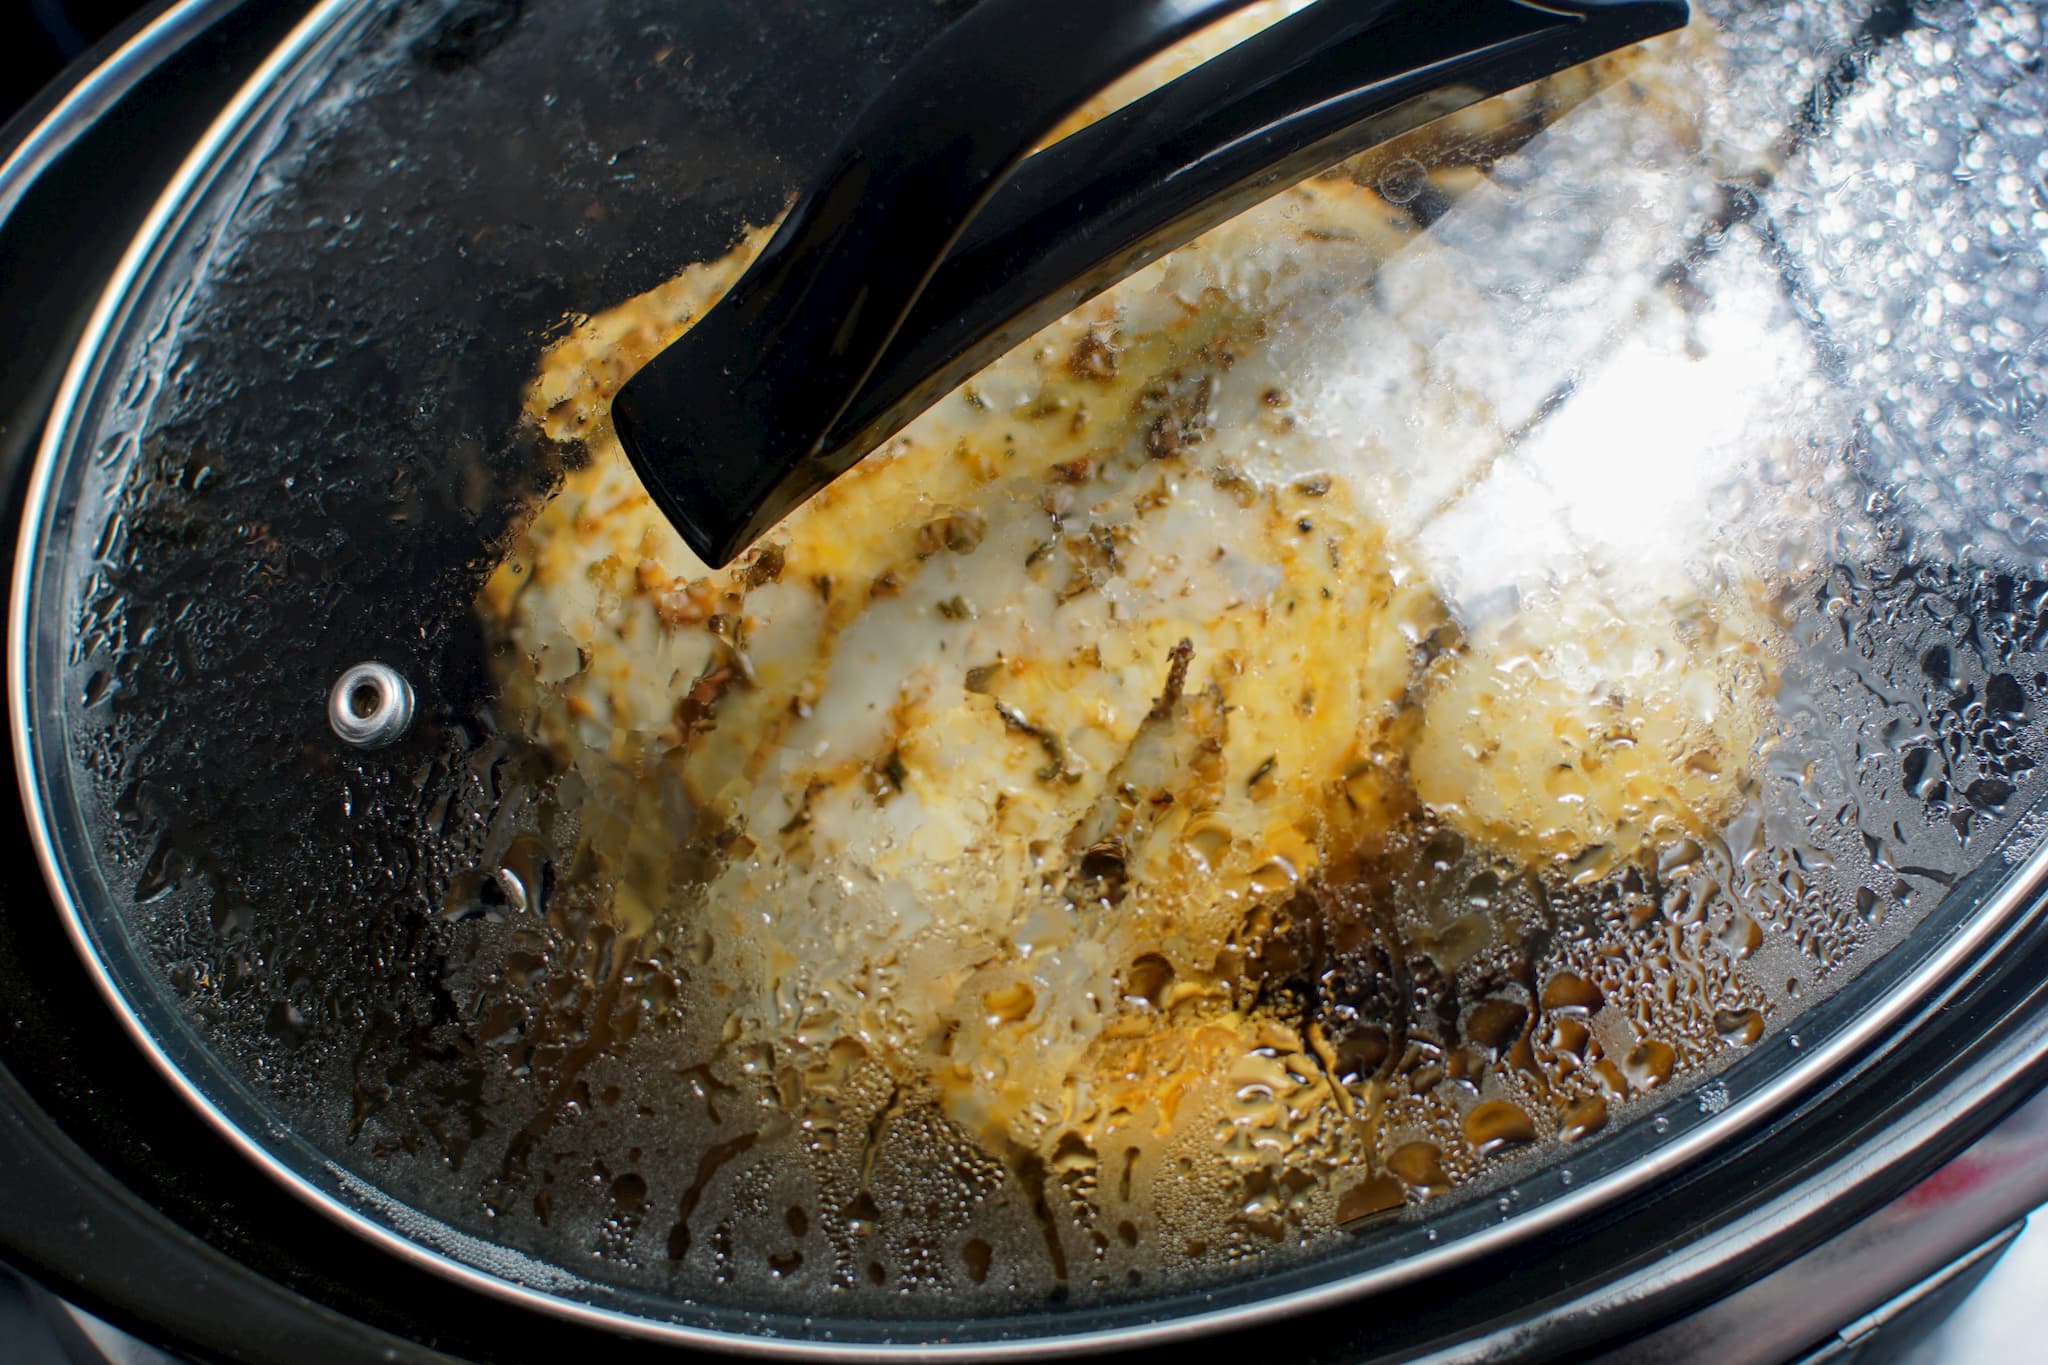 Seasoned chicken slow cooking in a CrockPot